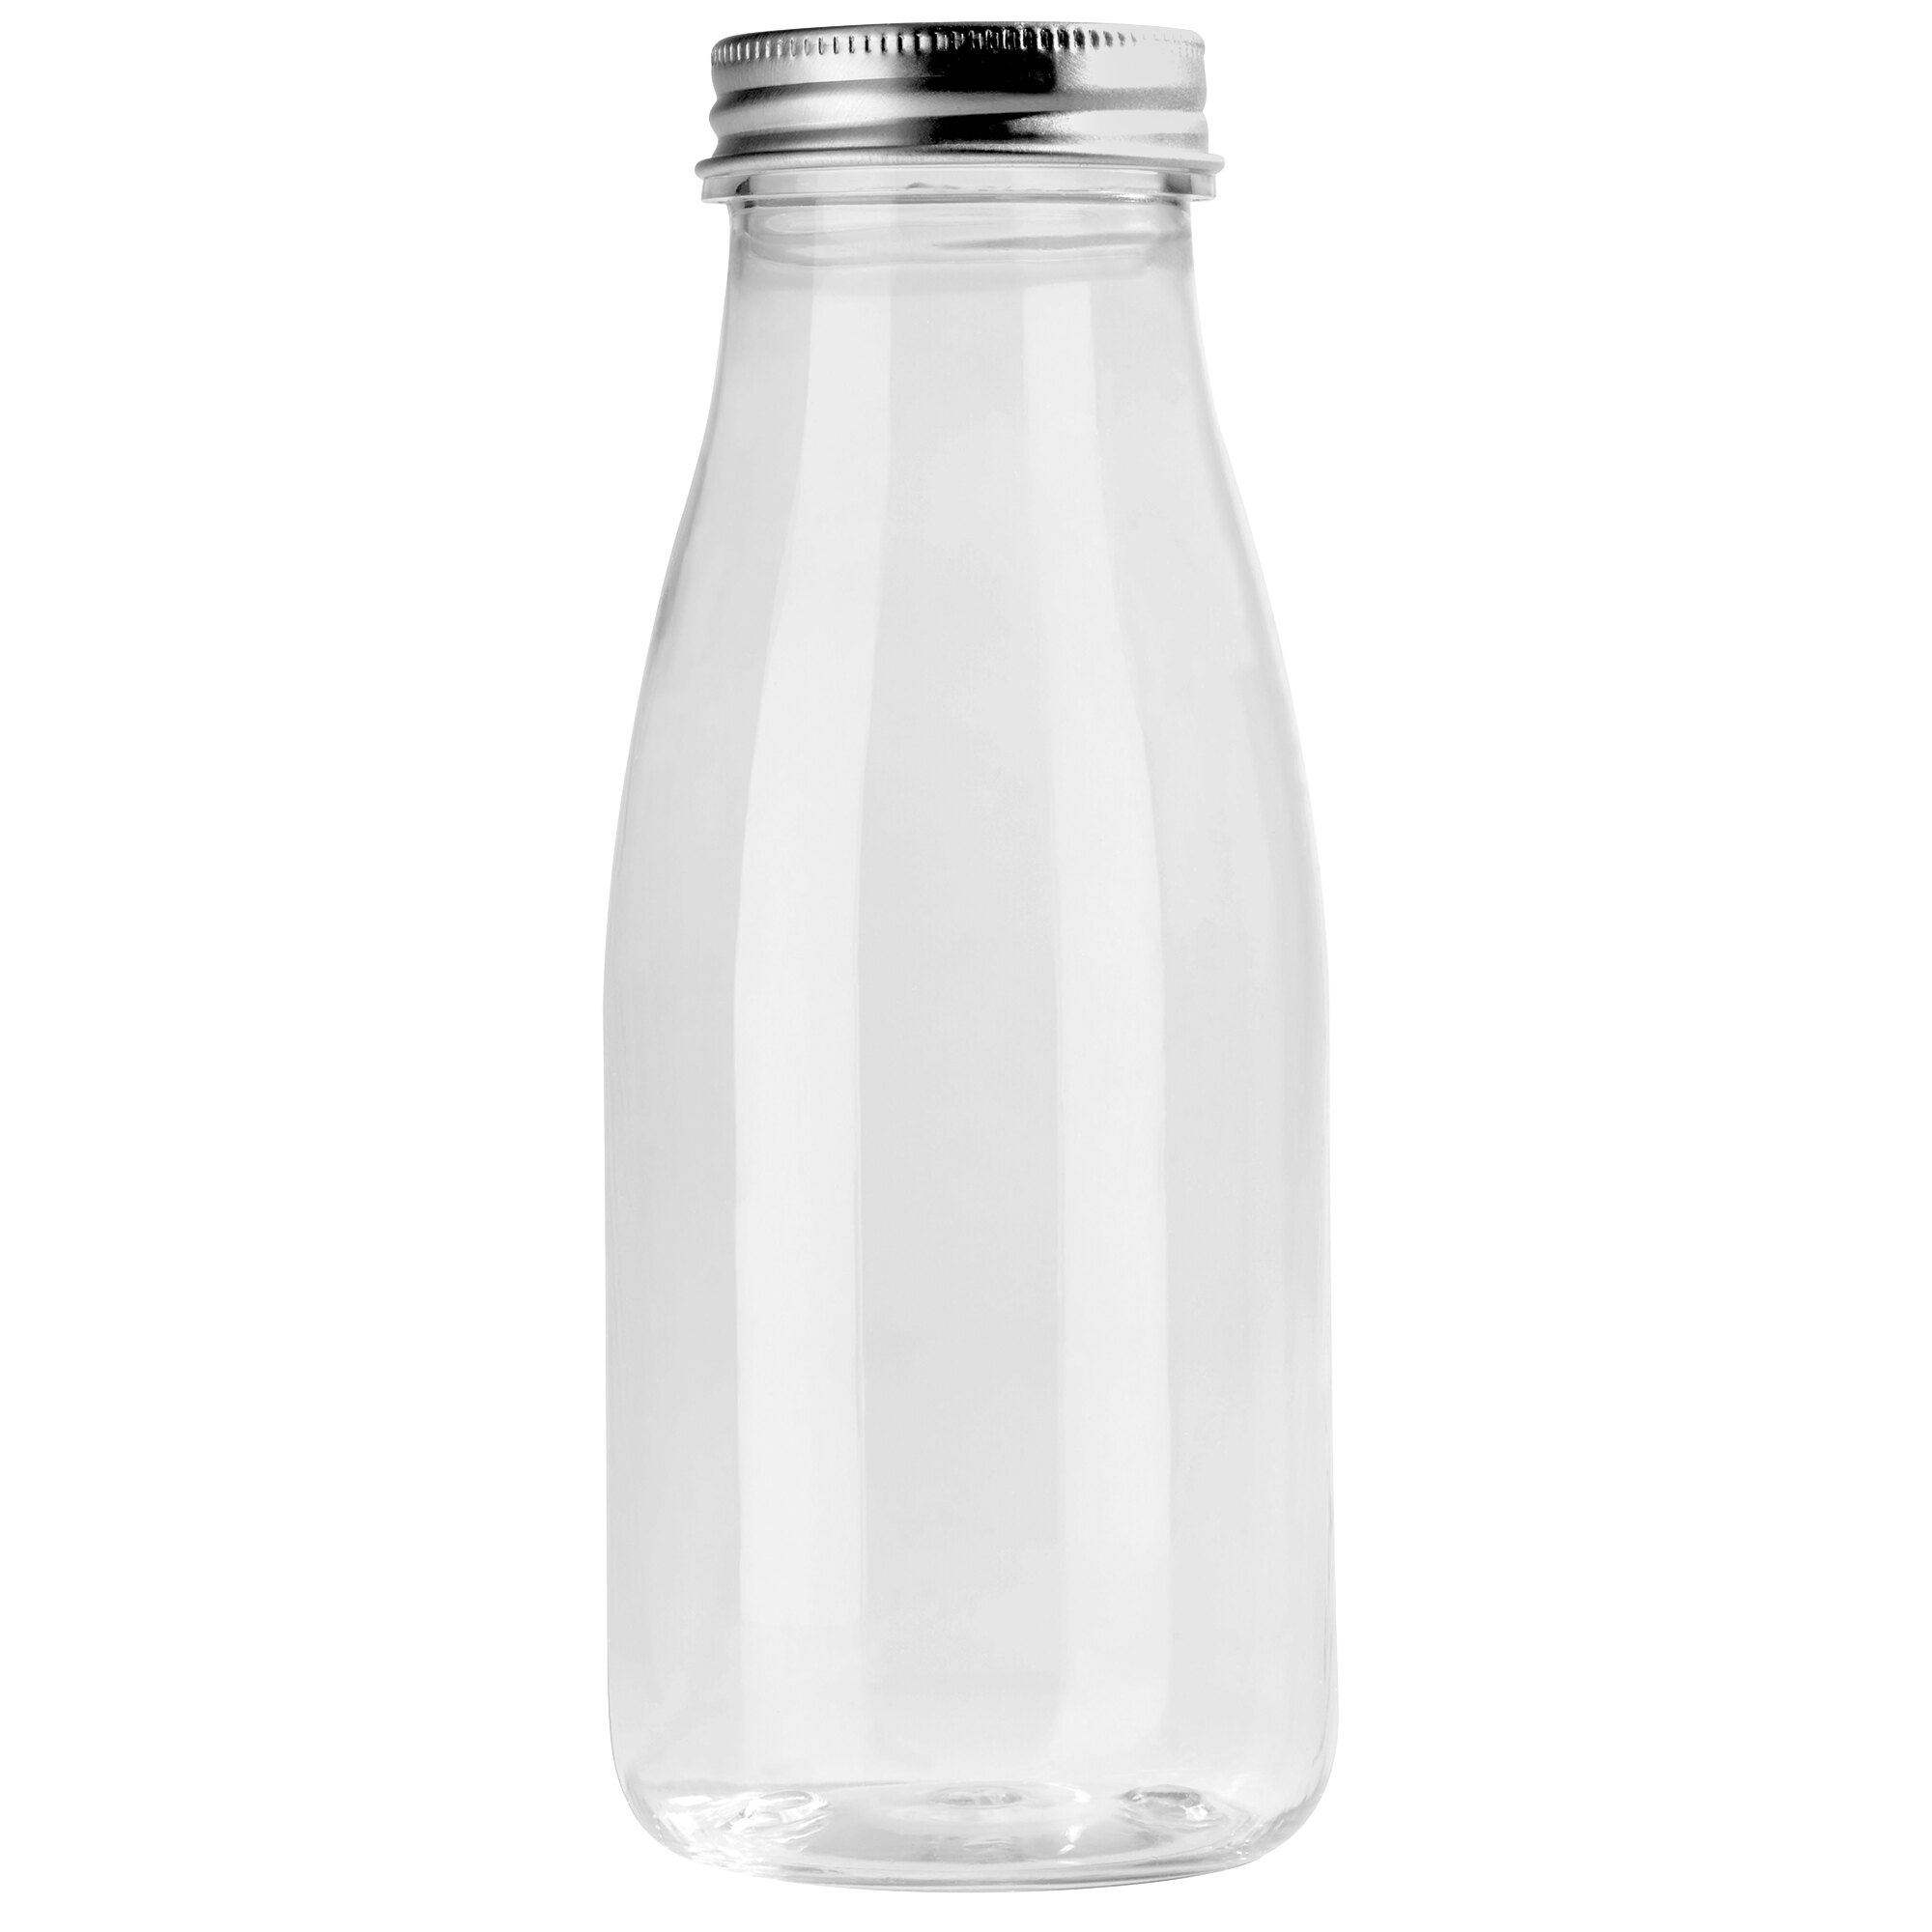 Plastic Juice Bottles, 8.5 oz. - 100/Case | WebstaurantStore